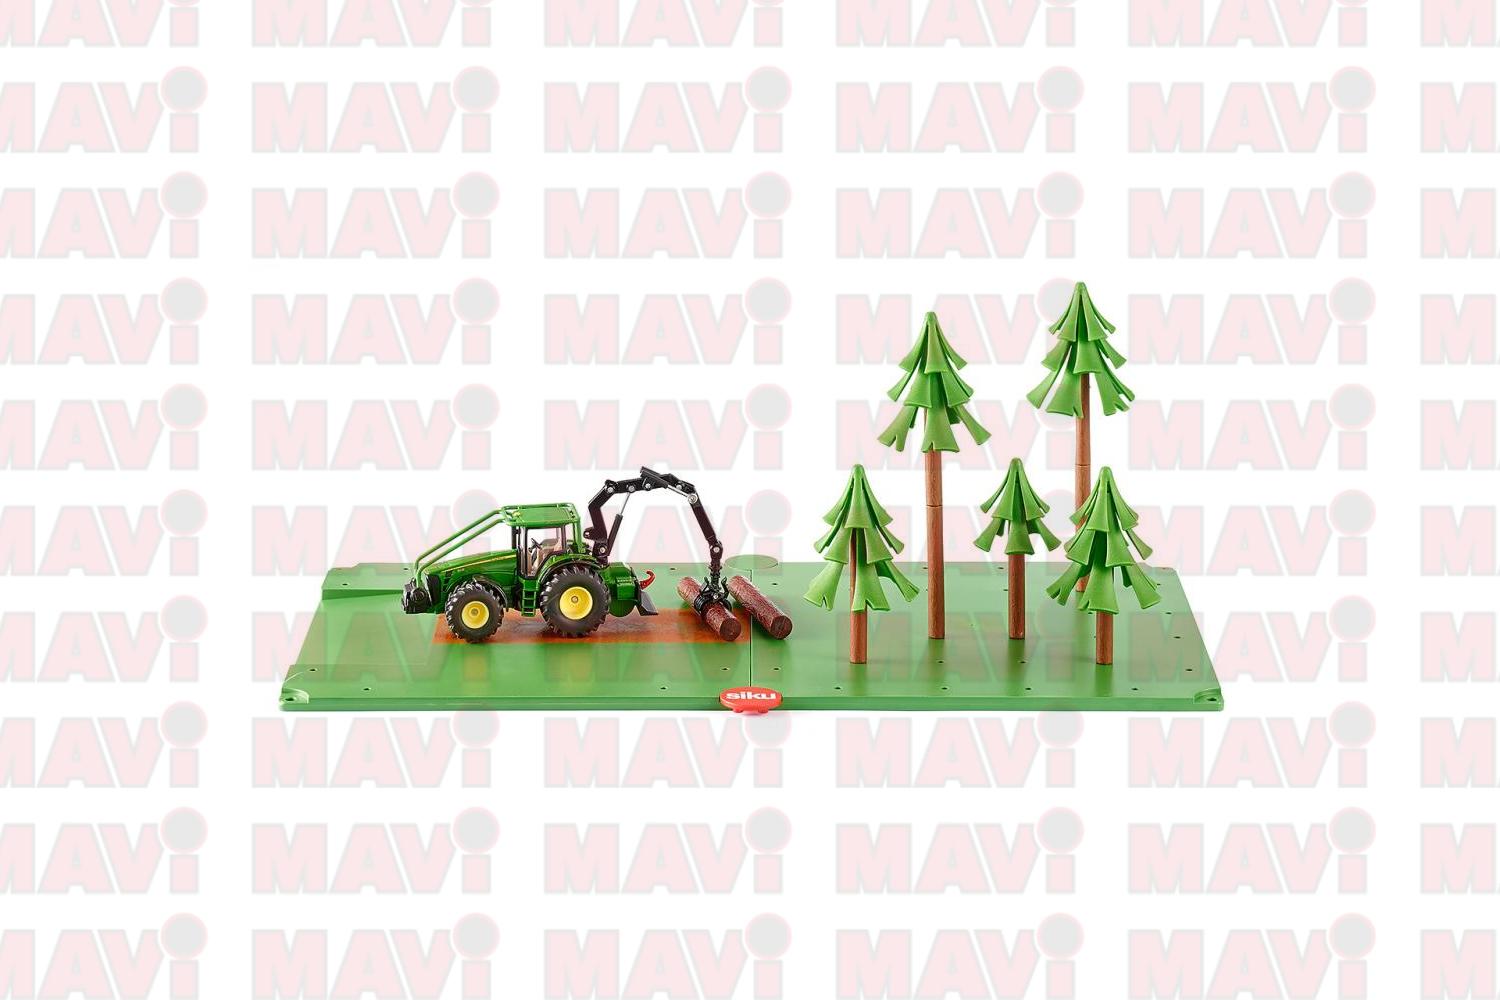 Jucarie Siku set forestier cu tractor si copaci 1:50, 540x270 mm # 5605